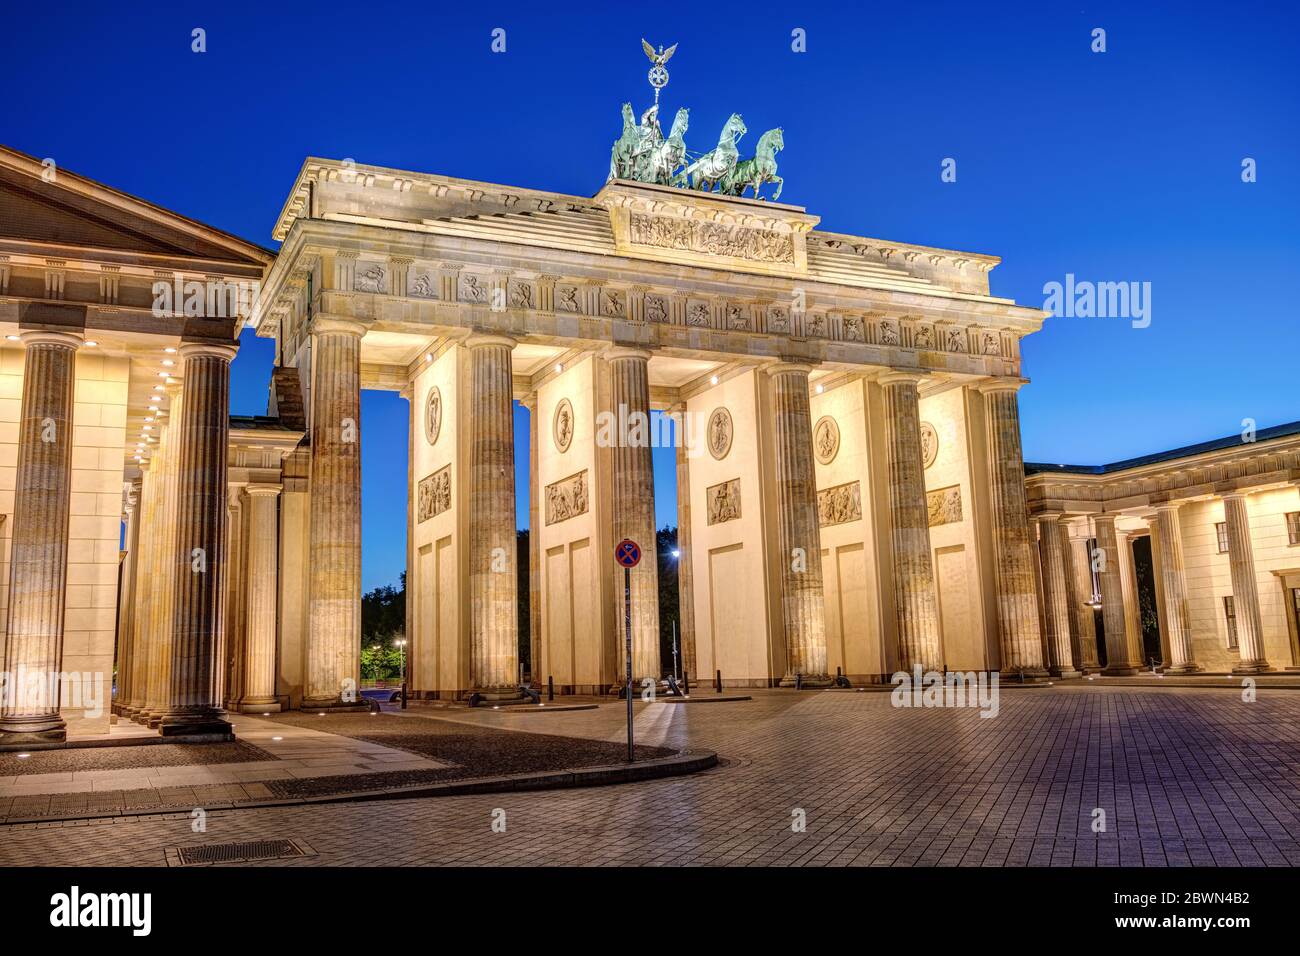 La famosa porta di Brandeburgo illuminata a Berlino all'ora blu senza persone Foto Stock